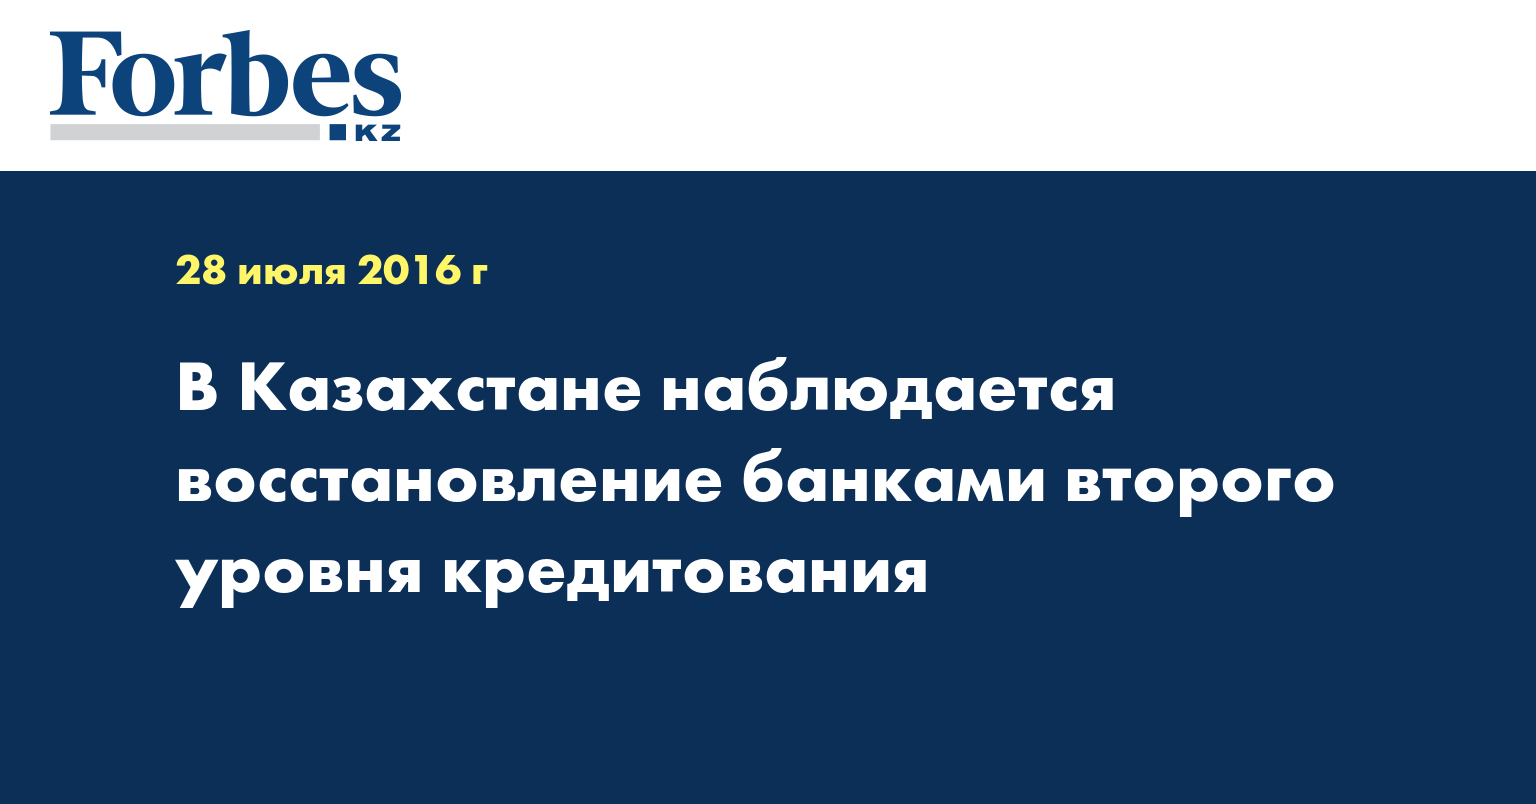 В Казахстане наблюдается восстановление банками второго уровня кредитования